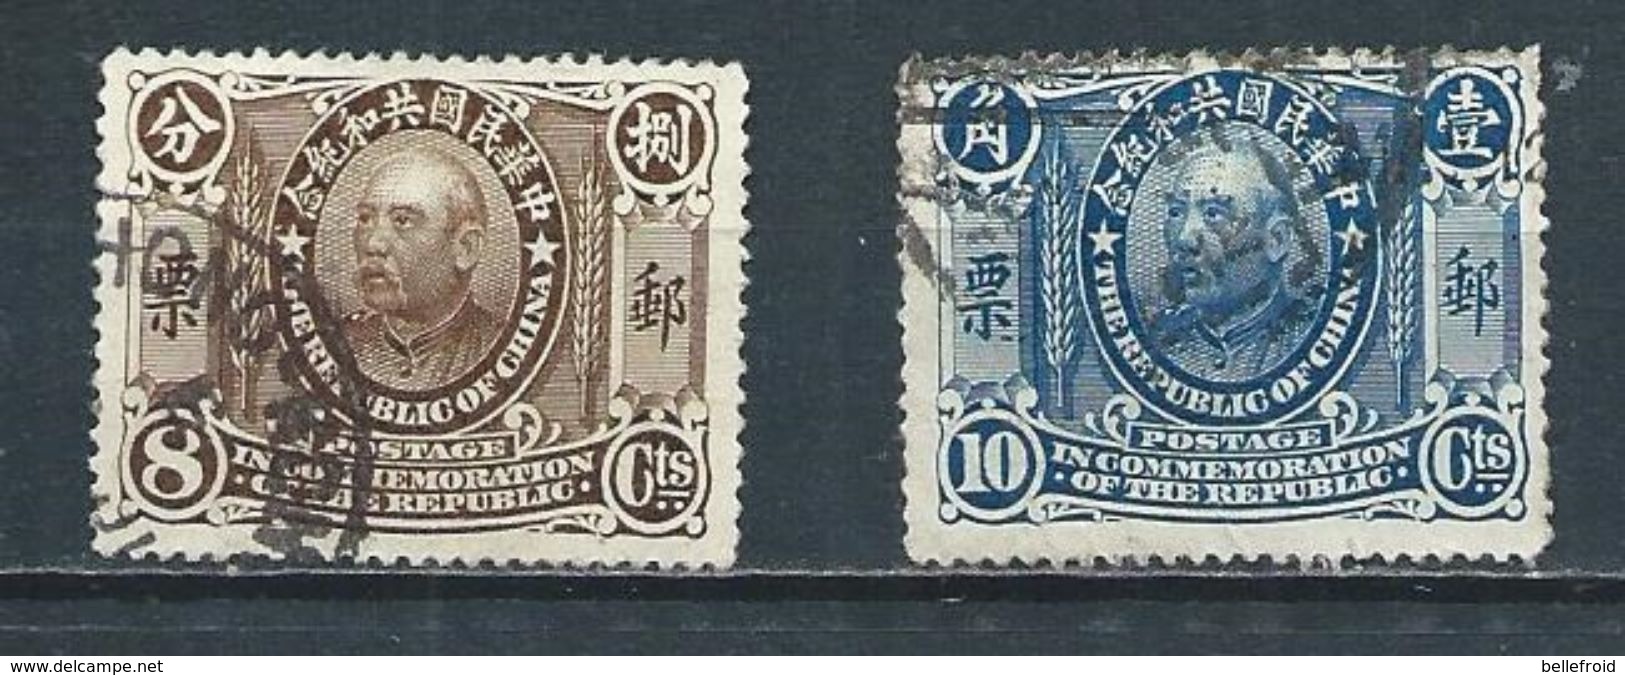 CHINA 1912 YUAN SHIHKAI 8c + 10c USED - 1912-1949 Republic